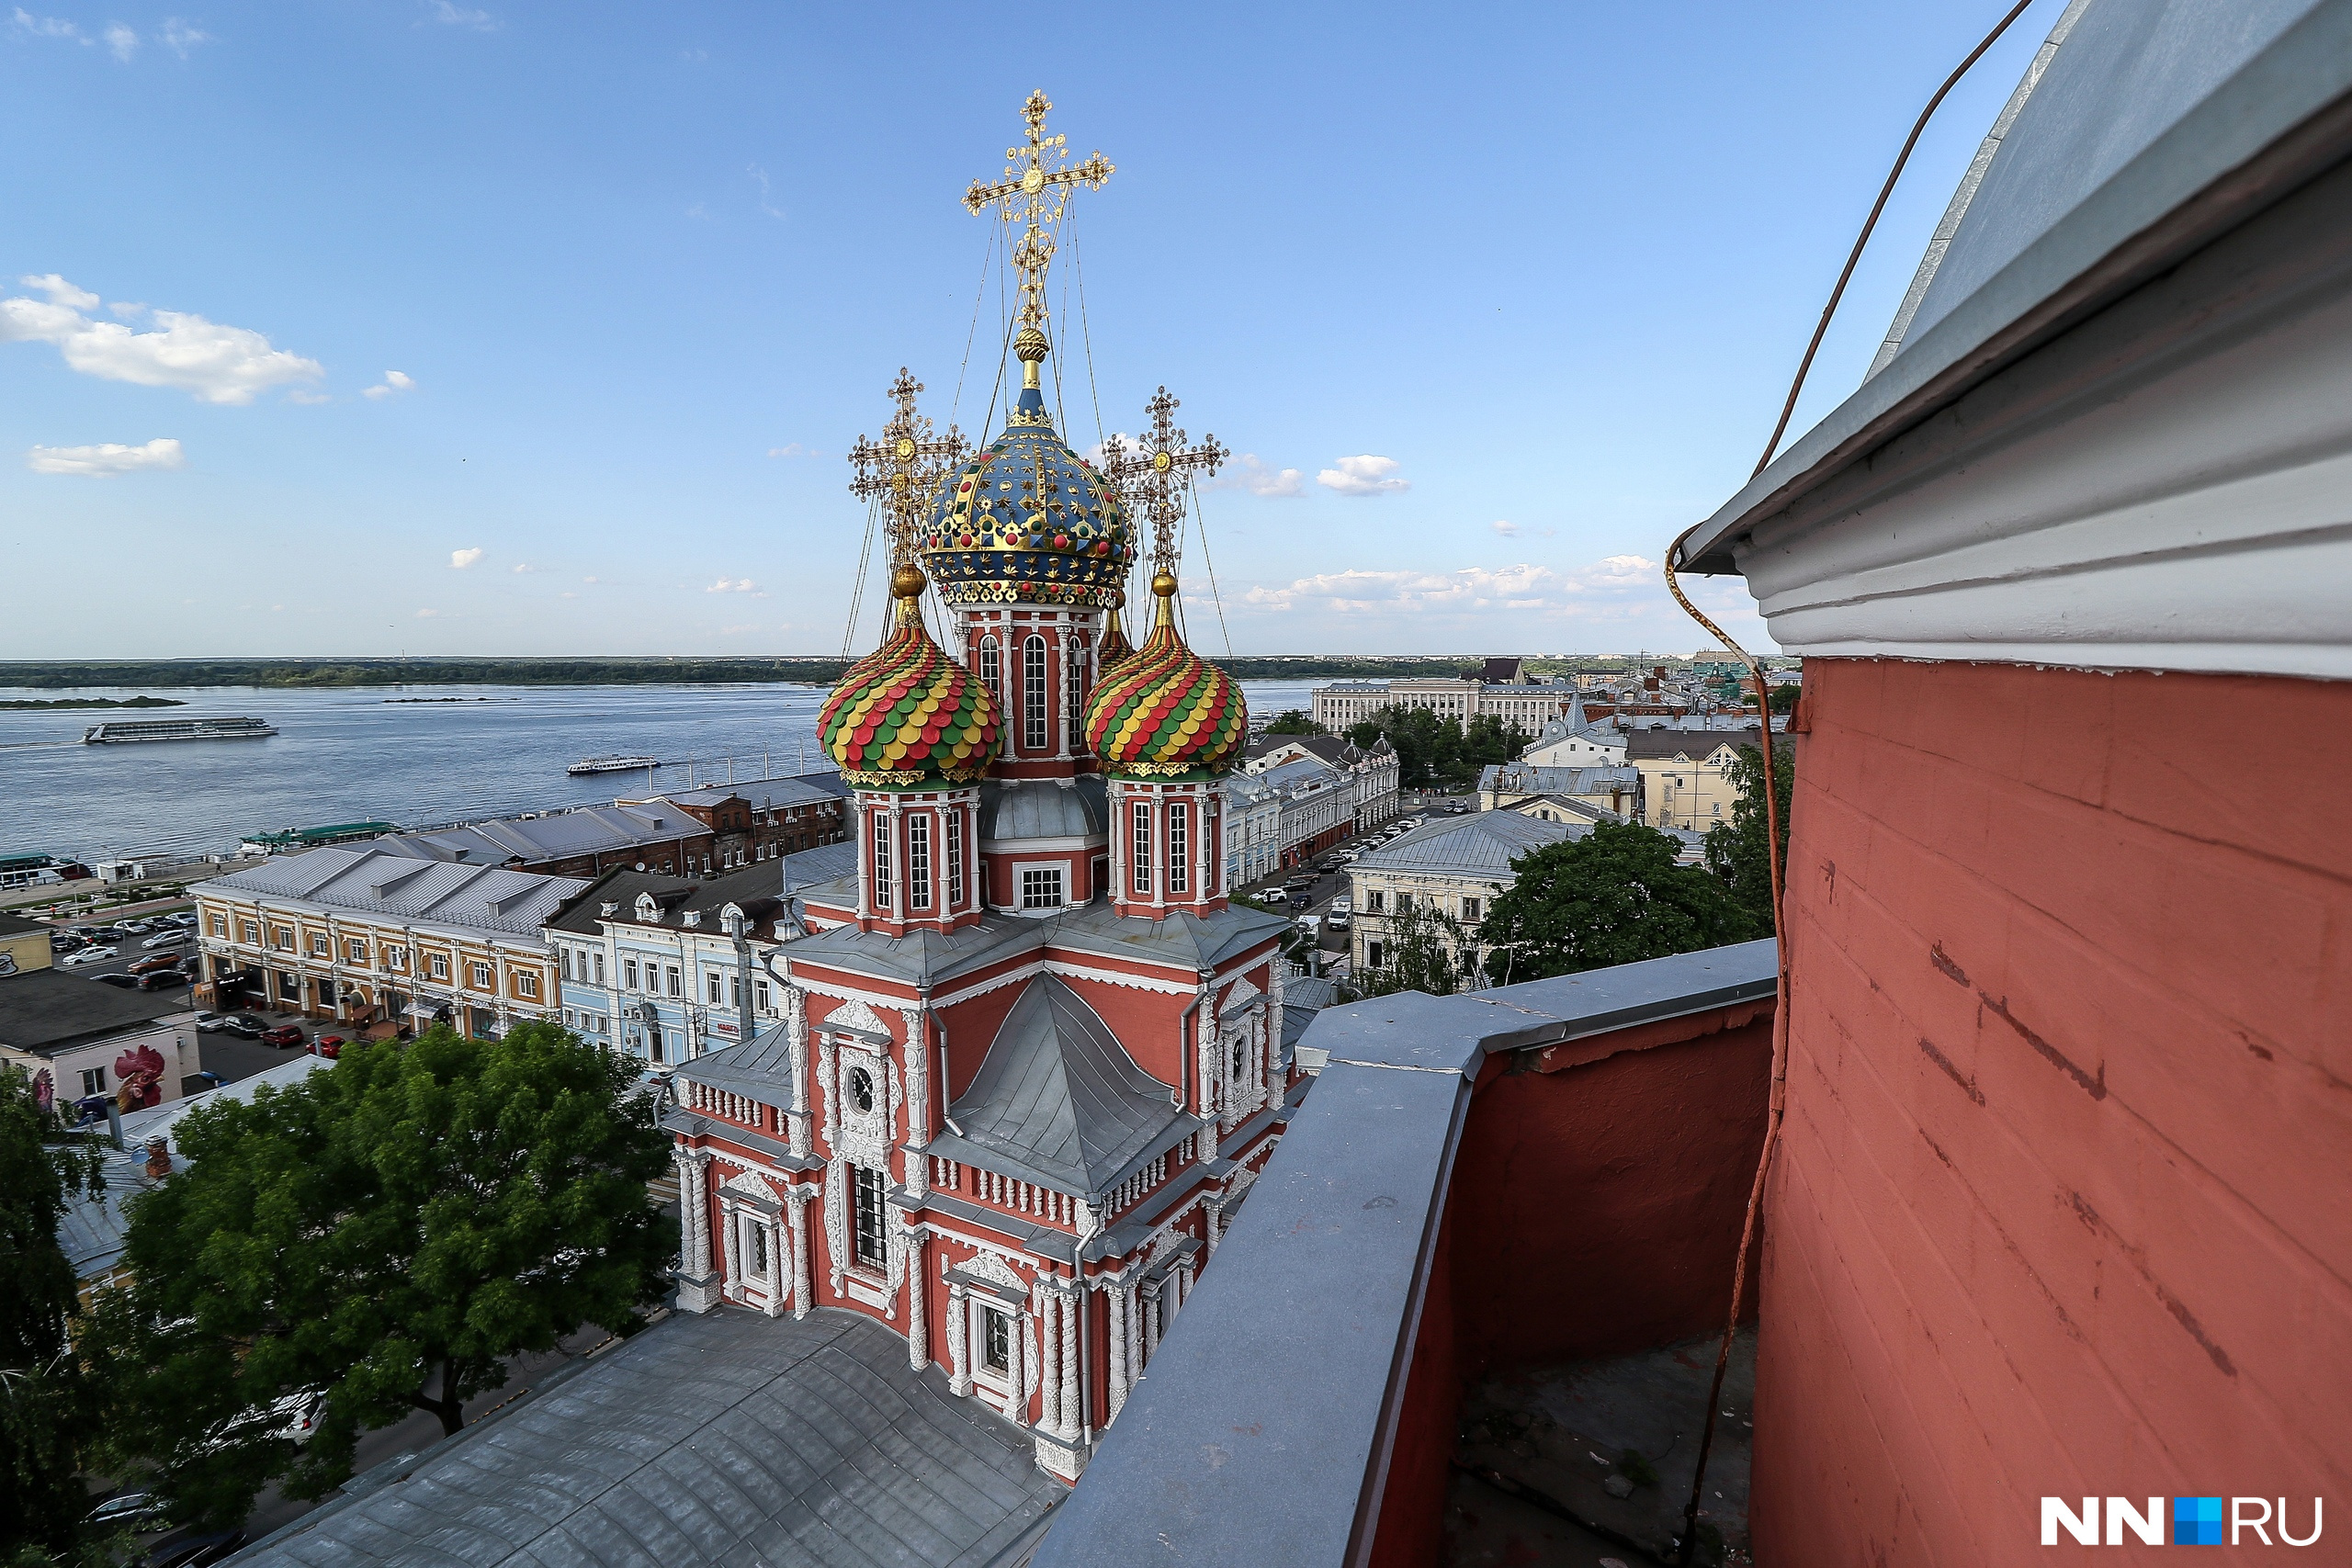 Вид на церковь с верхнего яруса колокольни